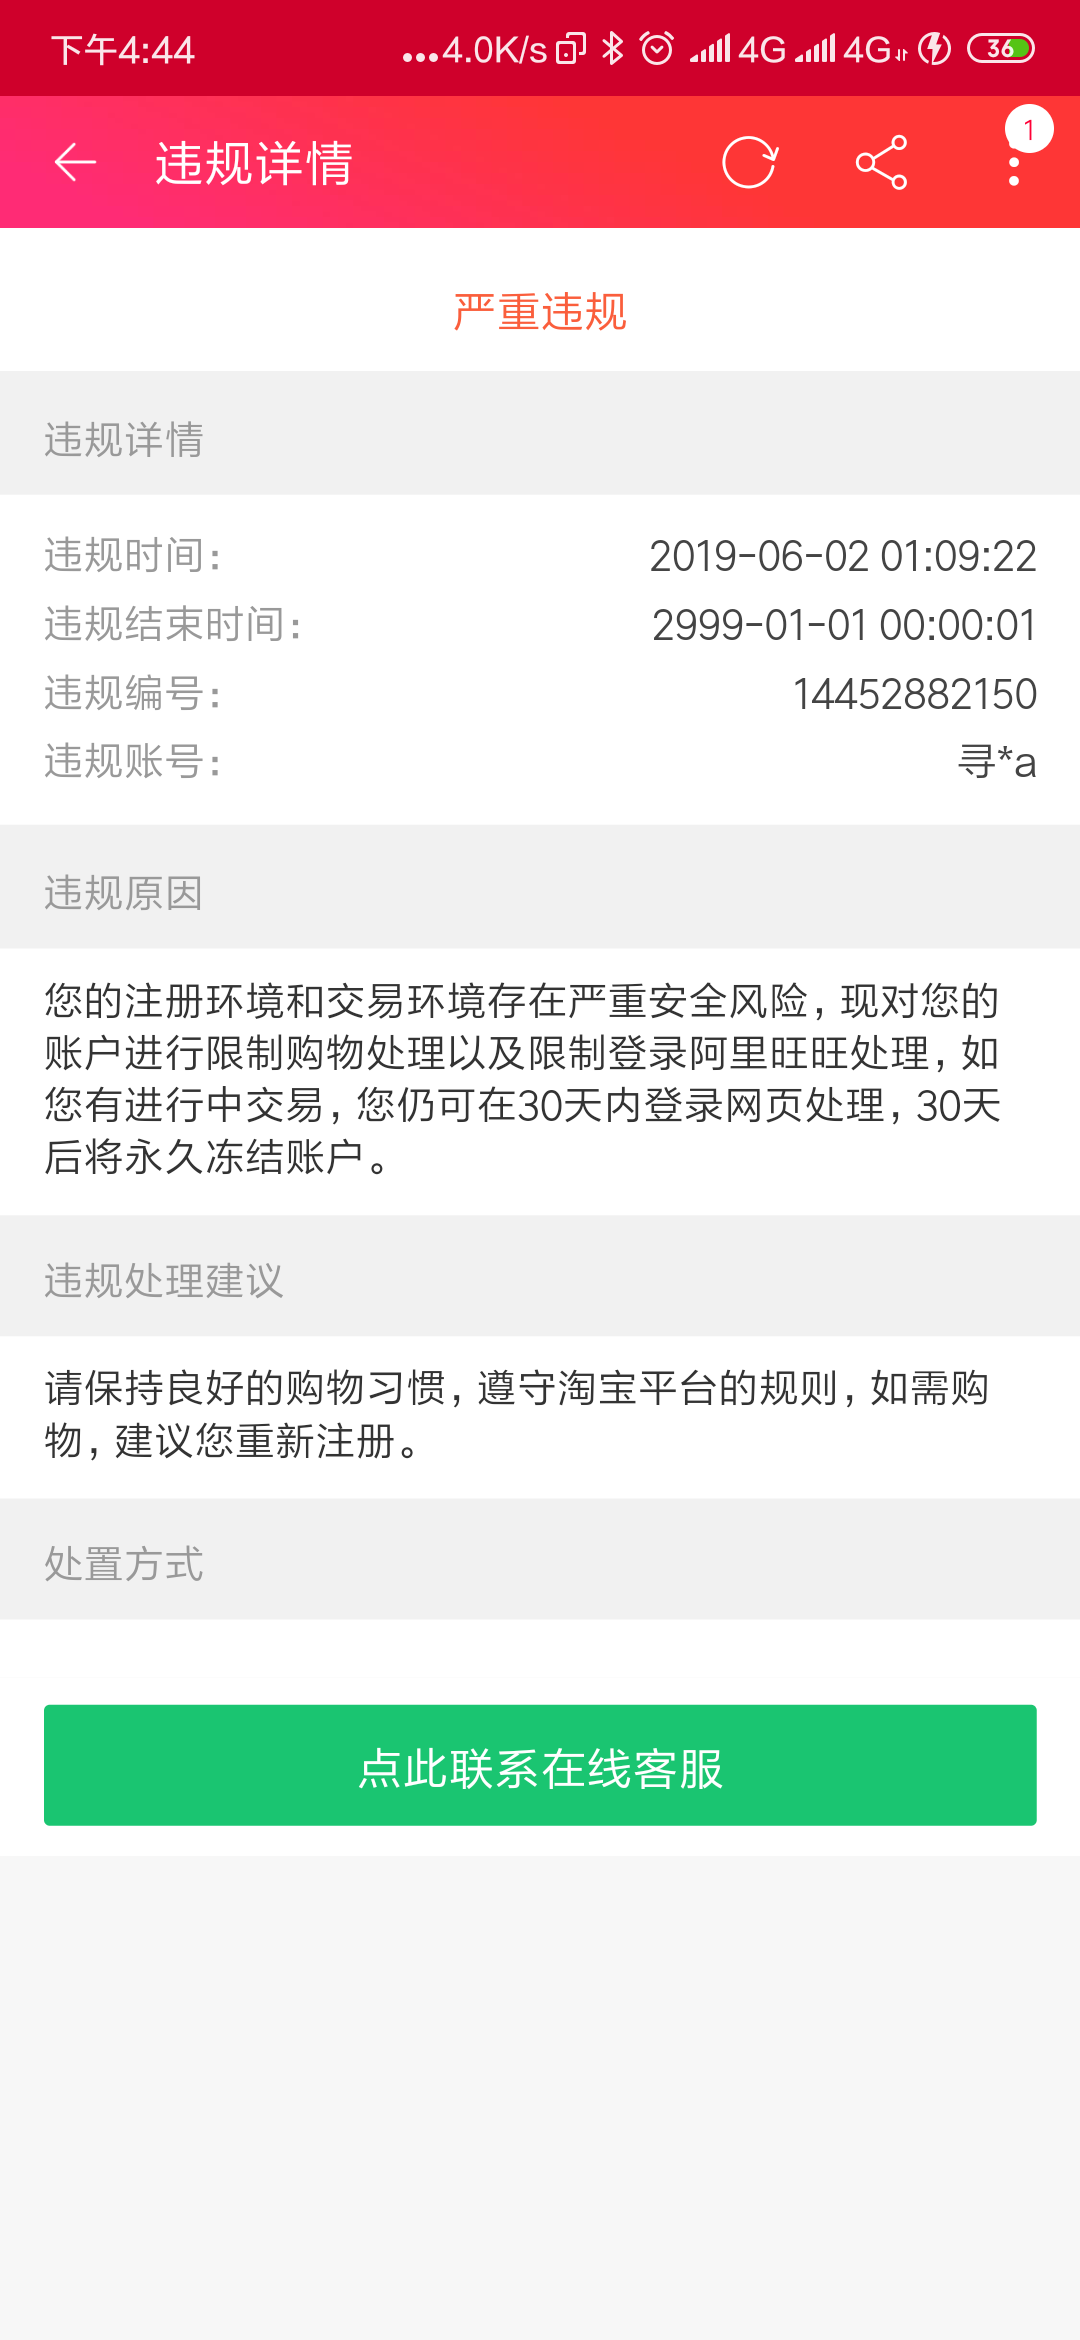 Screenshot_2019-06-02-16-44-11-117_com.taobao.tao.png